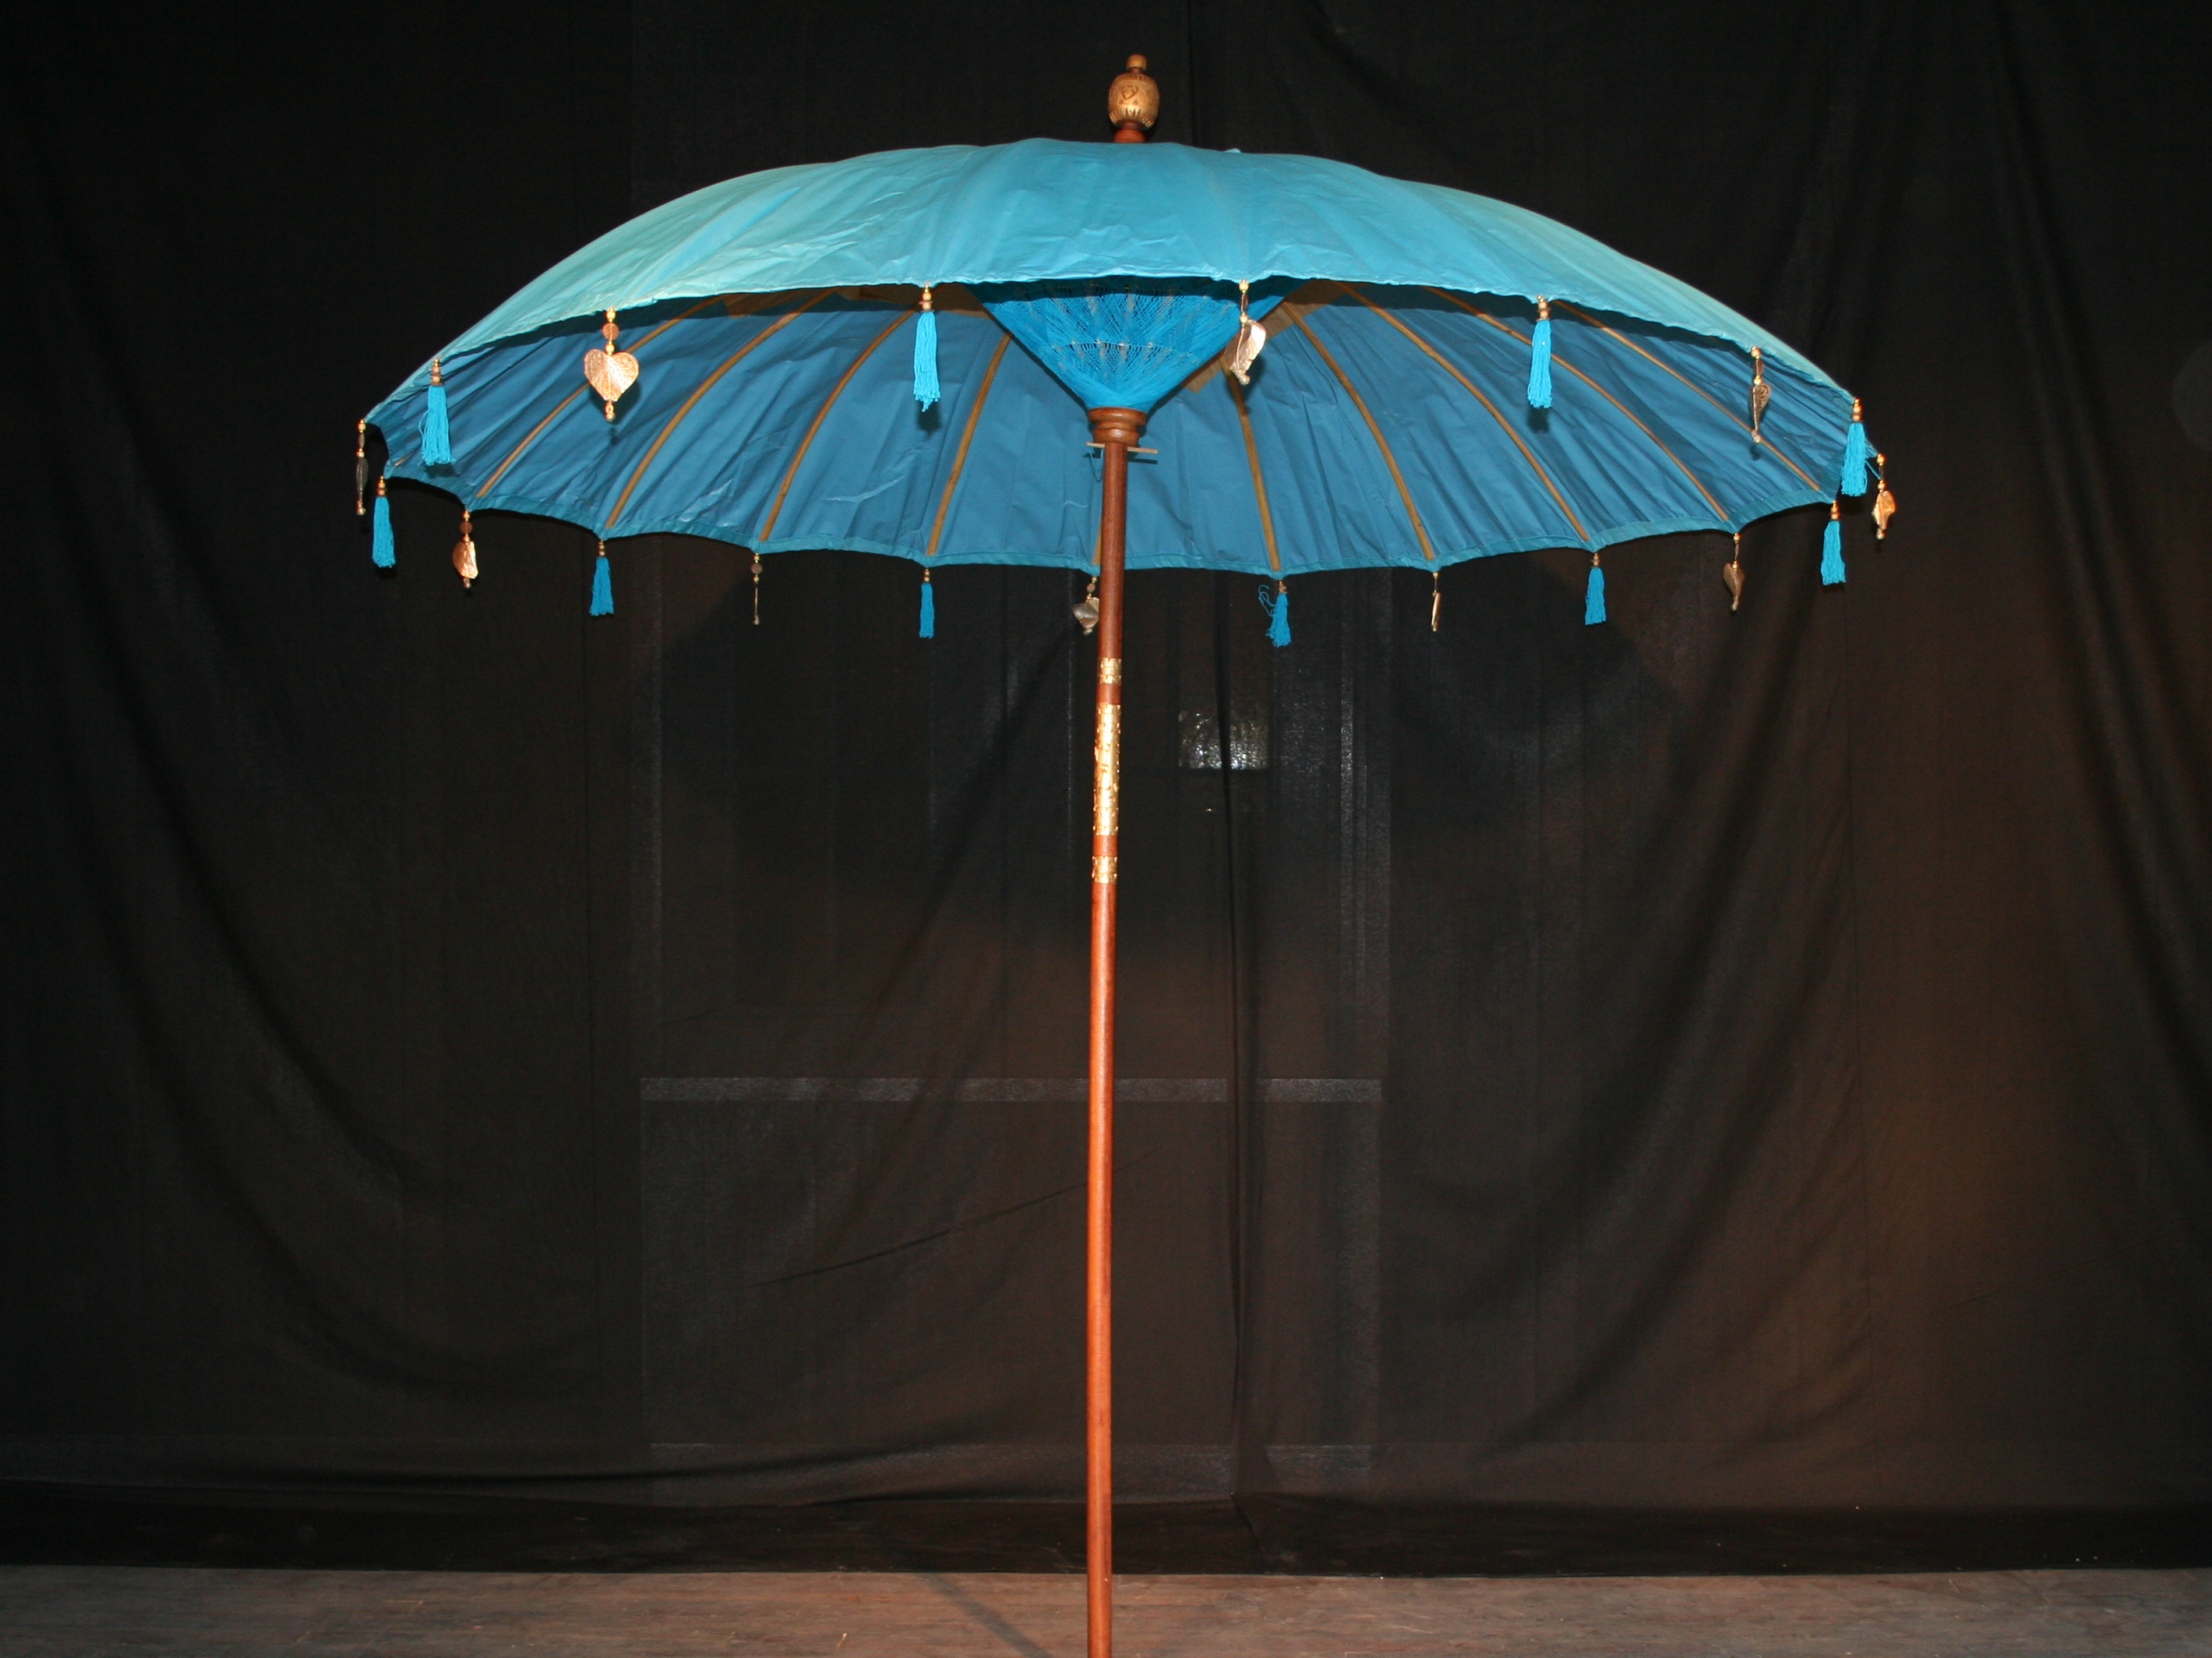 verhuur grote Bali parasol blauw huren